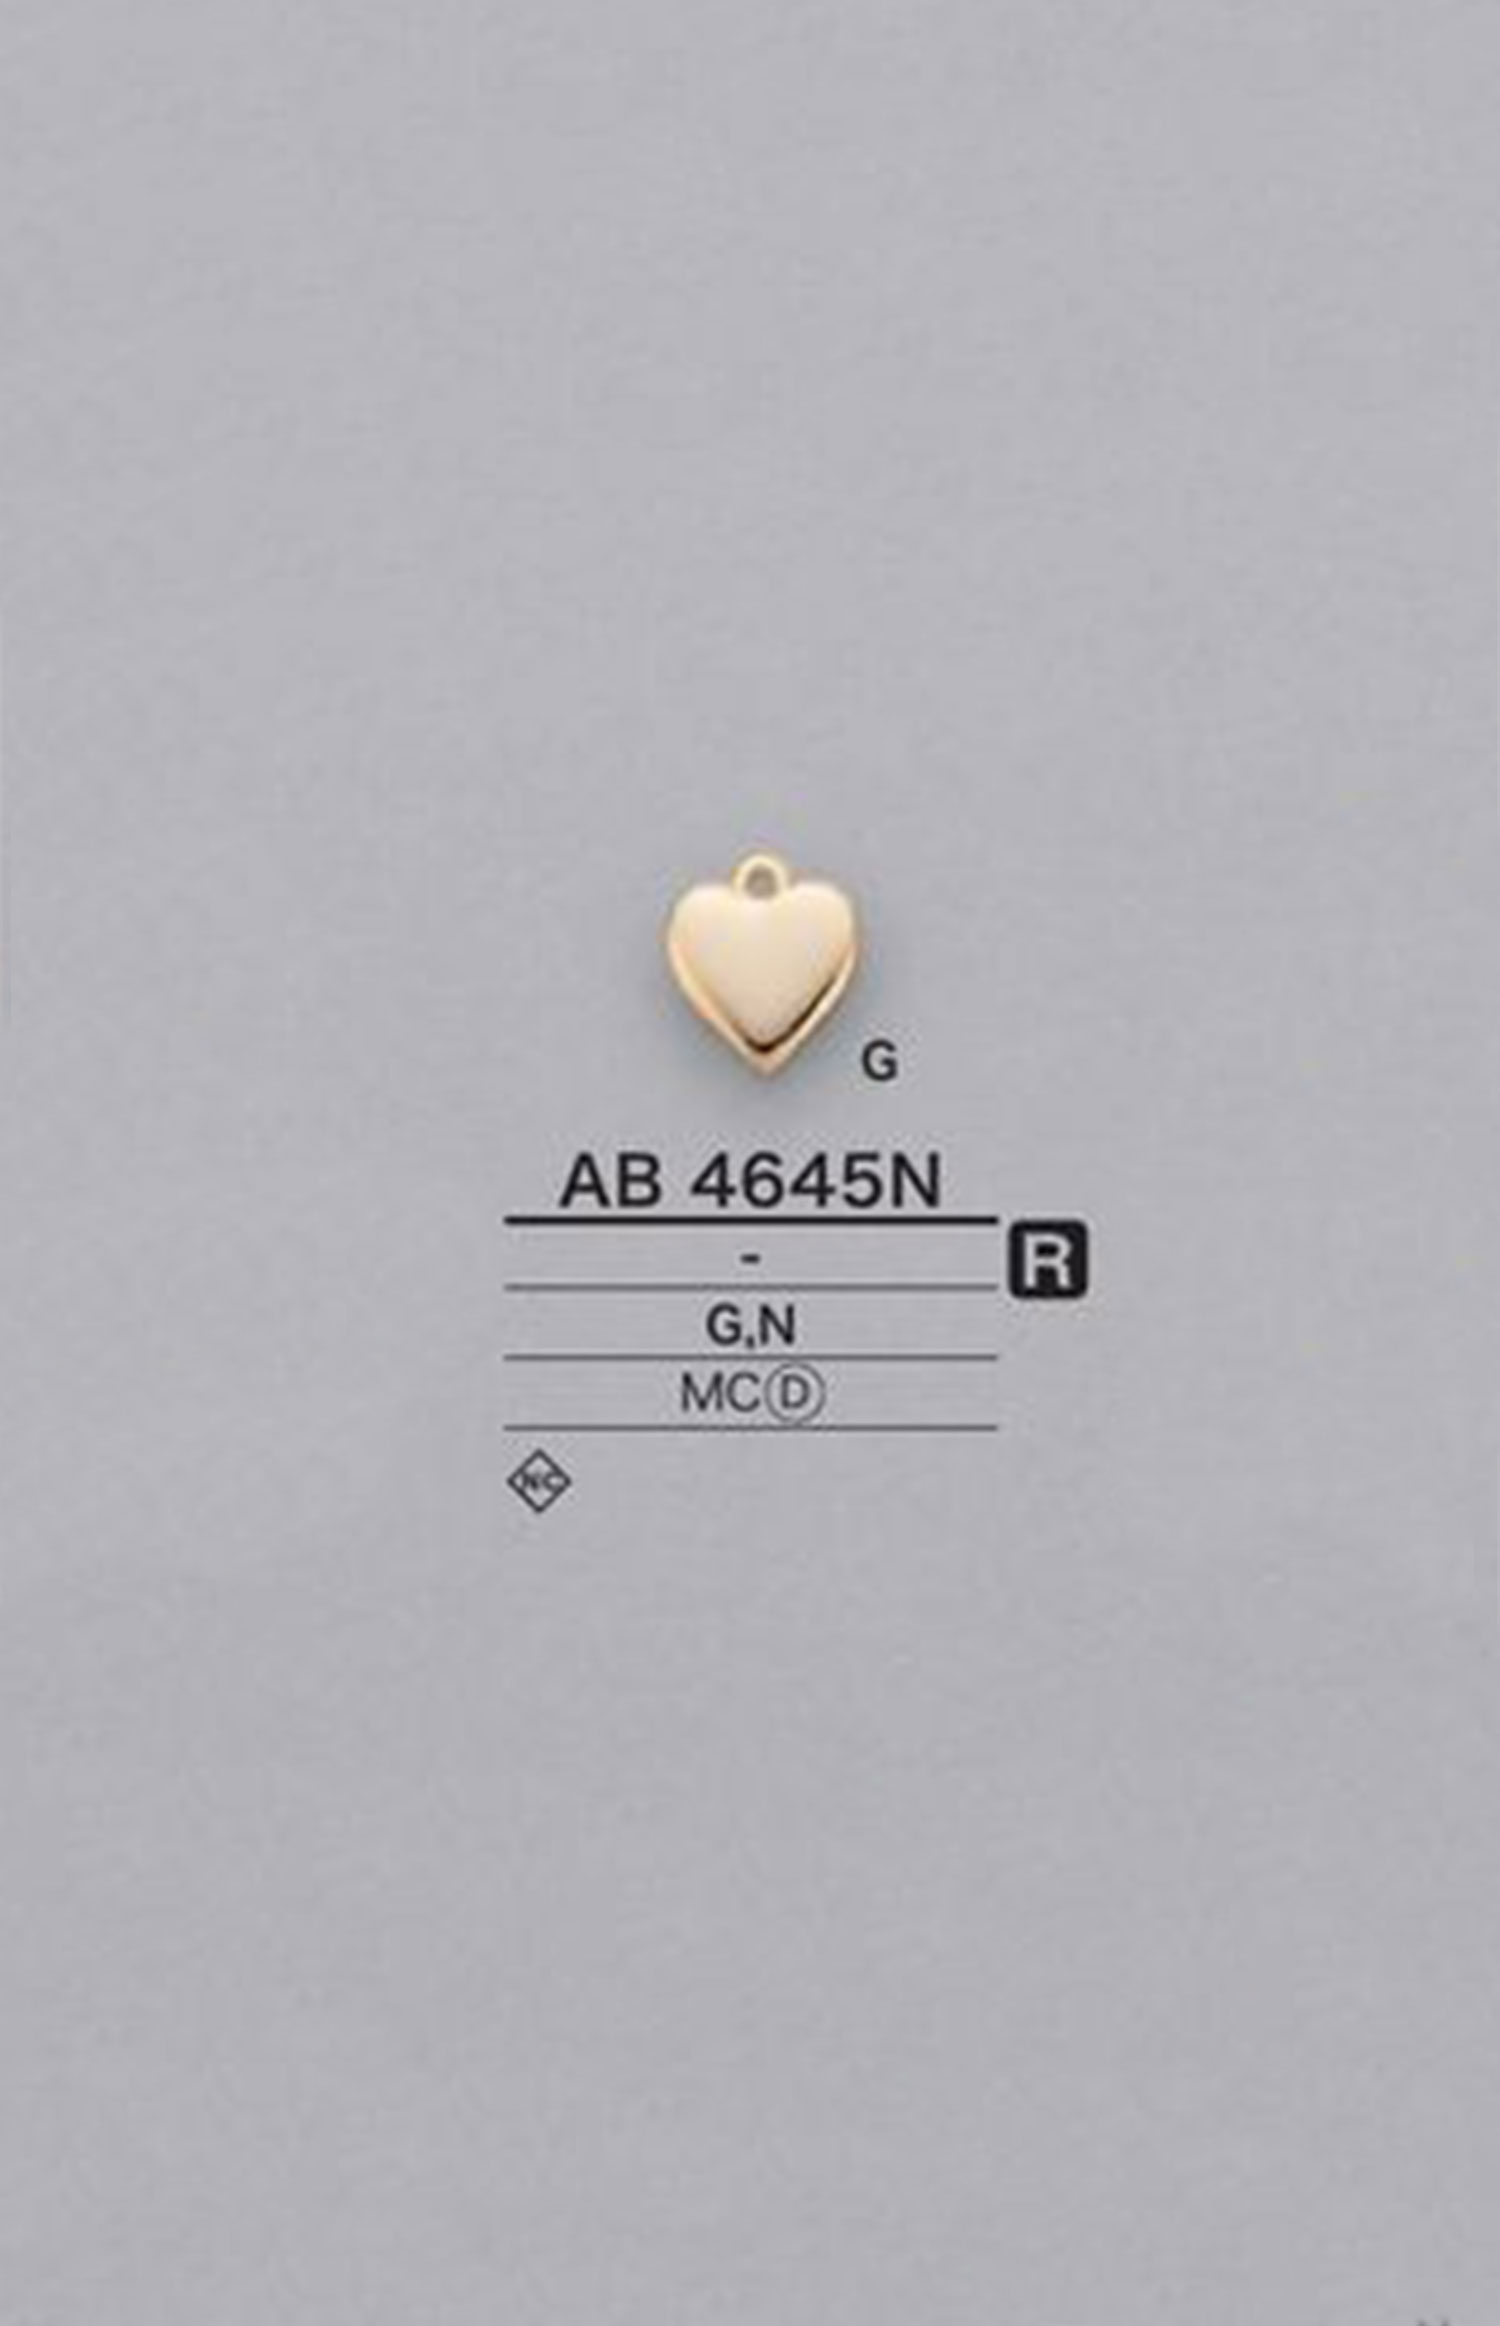 AB4645N Pièces De Motif En Forme De Cœur[Marchandises Diverses Et Autres] IRIS